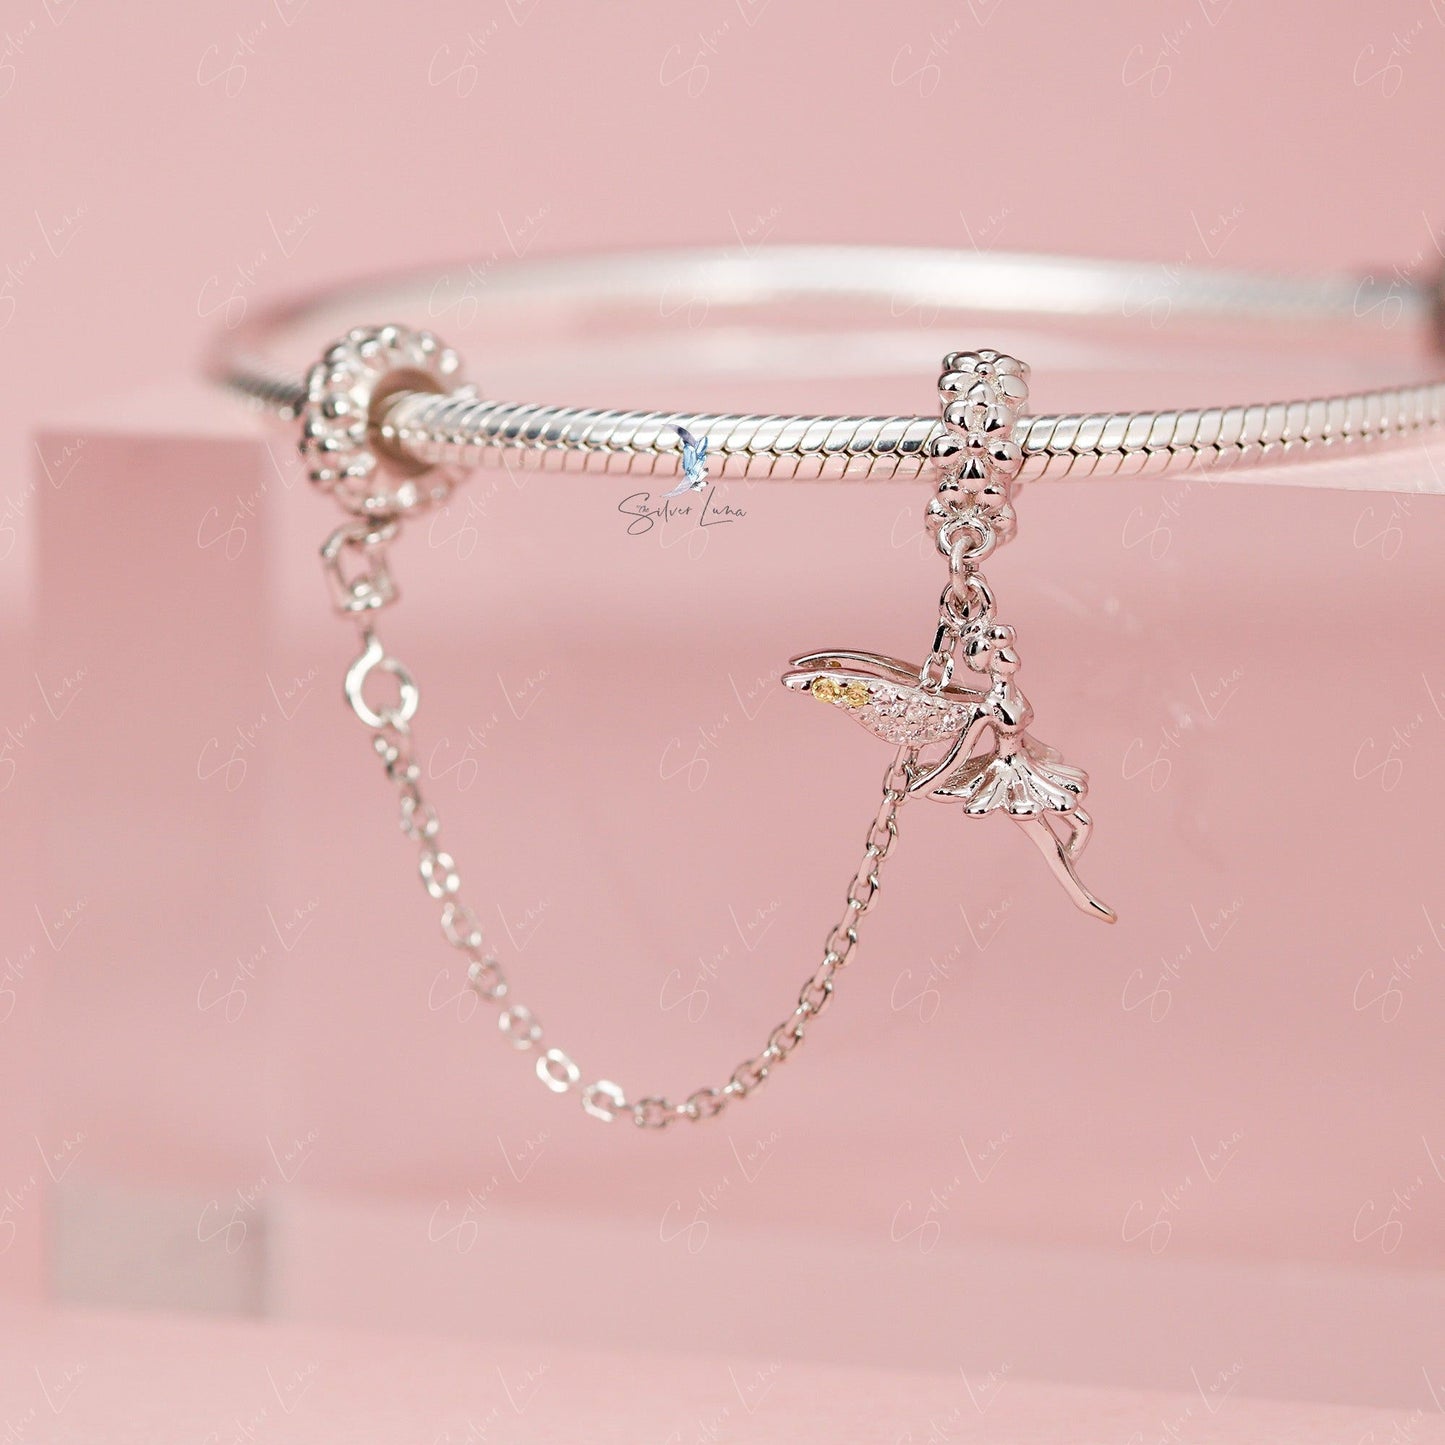 fairy satay chain for charm bracelet